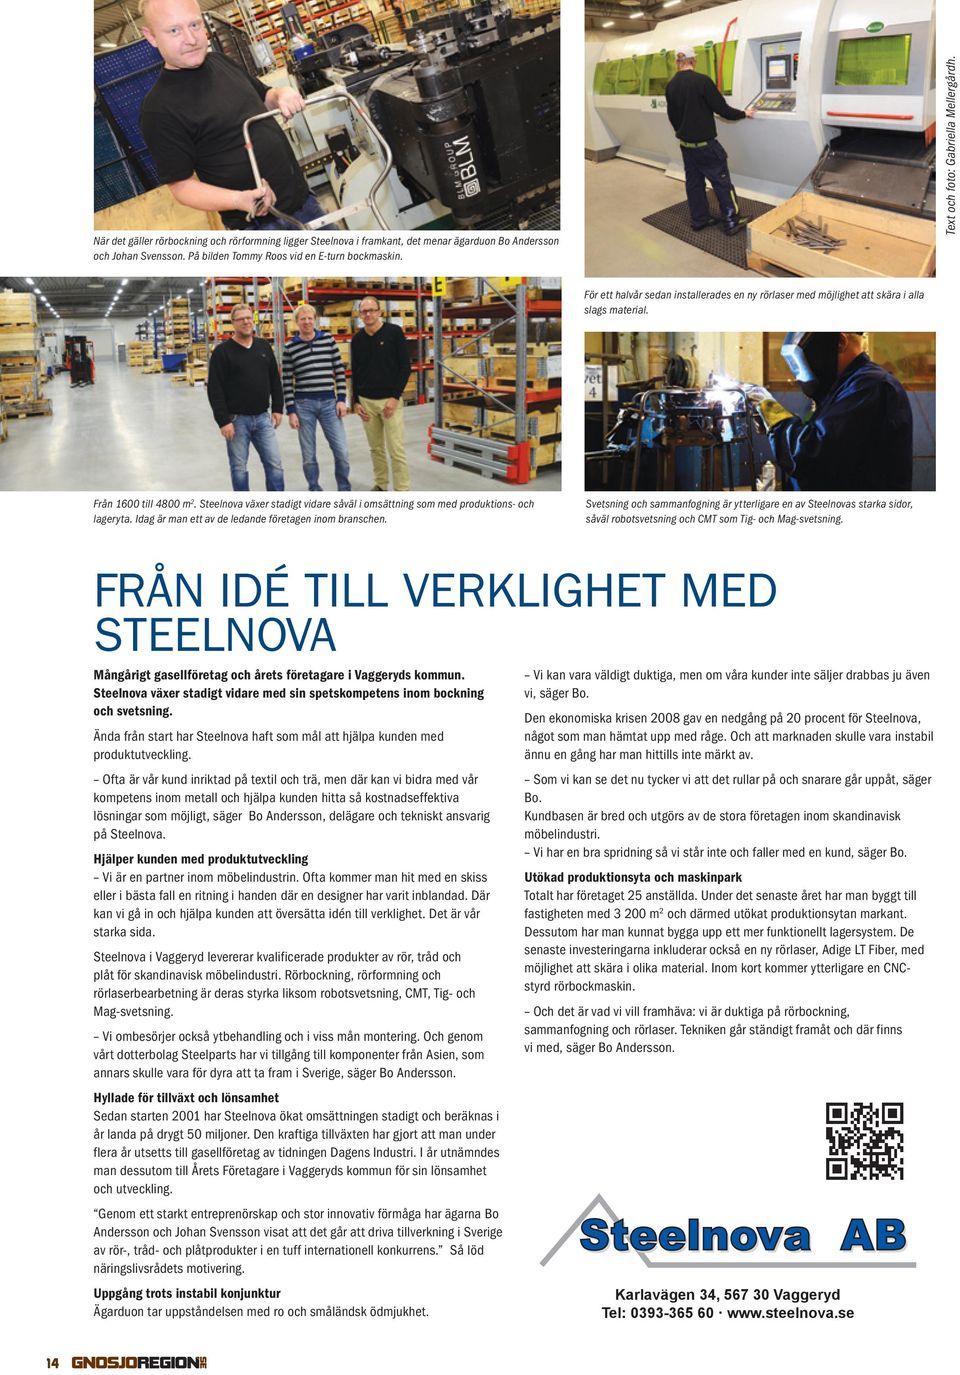 Steelnova växer stadigt vidare såväl i omsättning som med produktions- och lageryta. Idag är man ett av de ledande företagen inom branschen.